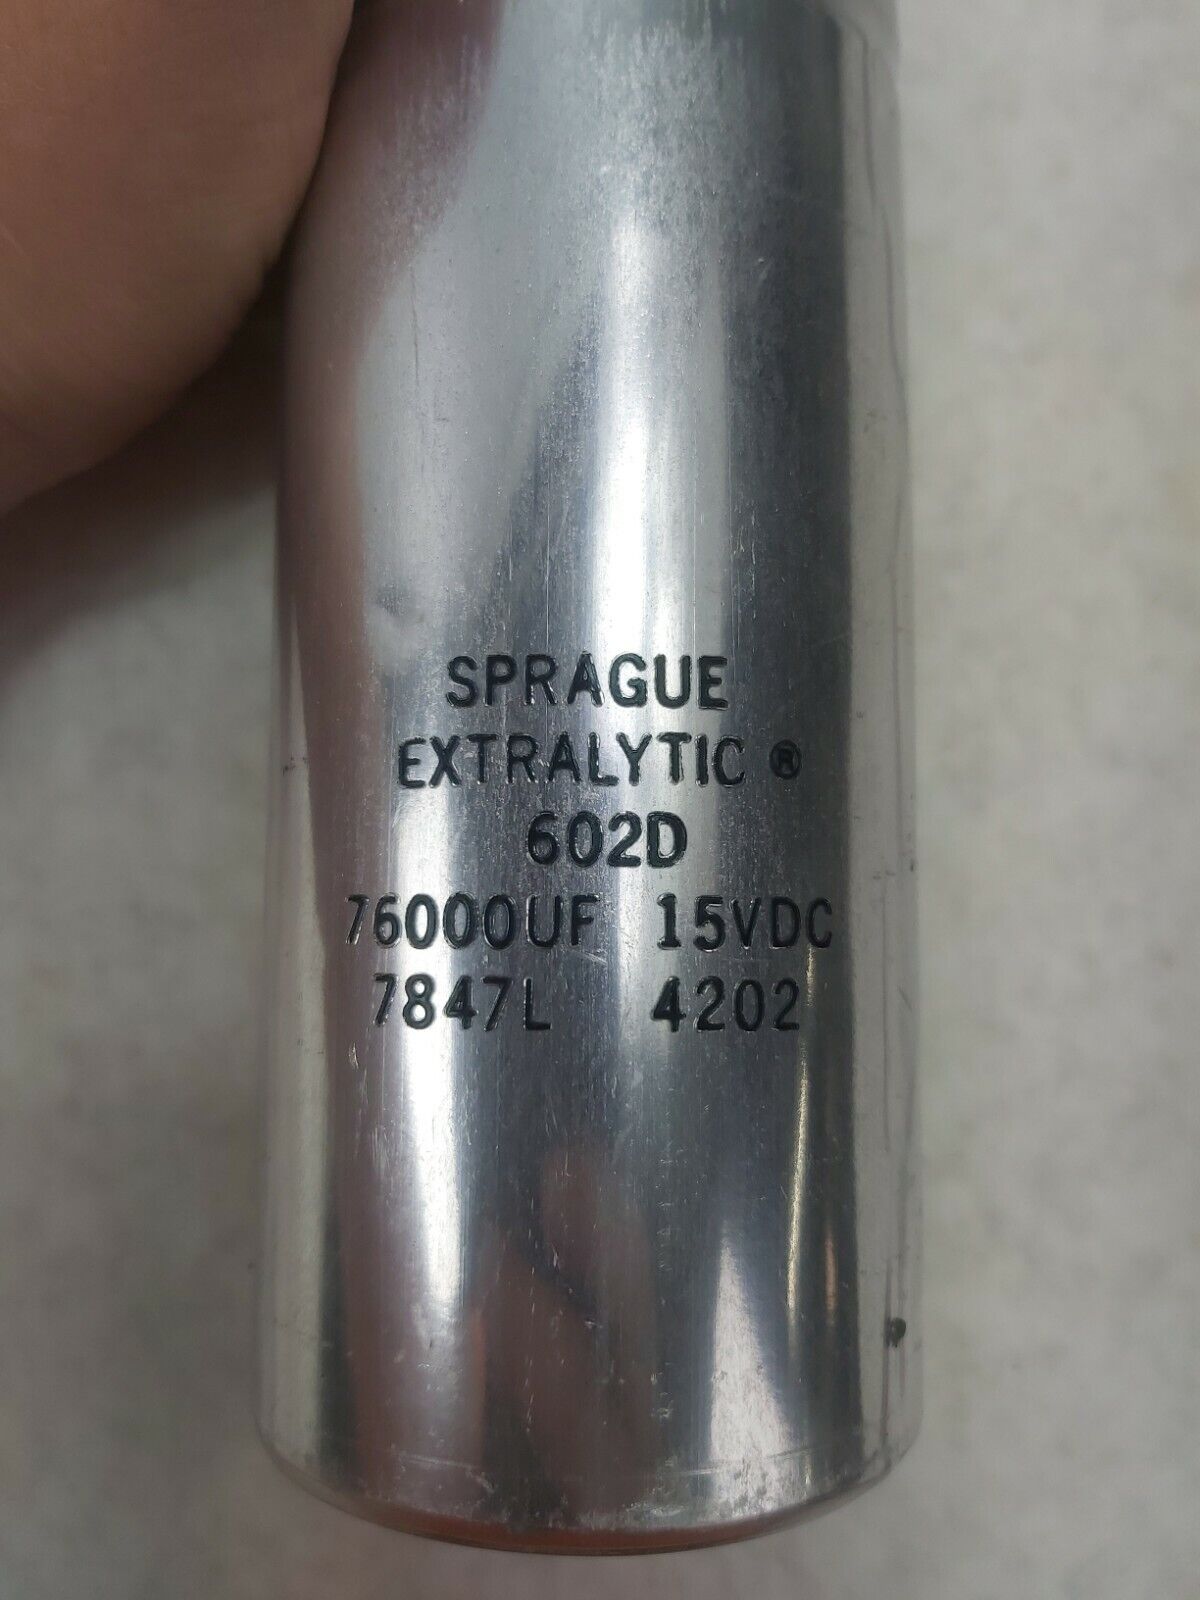 Sprague Extralytic 602D 76000UF 15VDC 7847L 4202 Capacitor